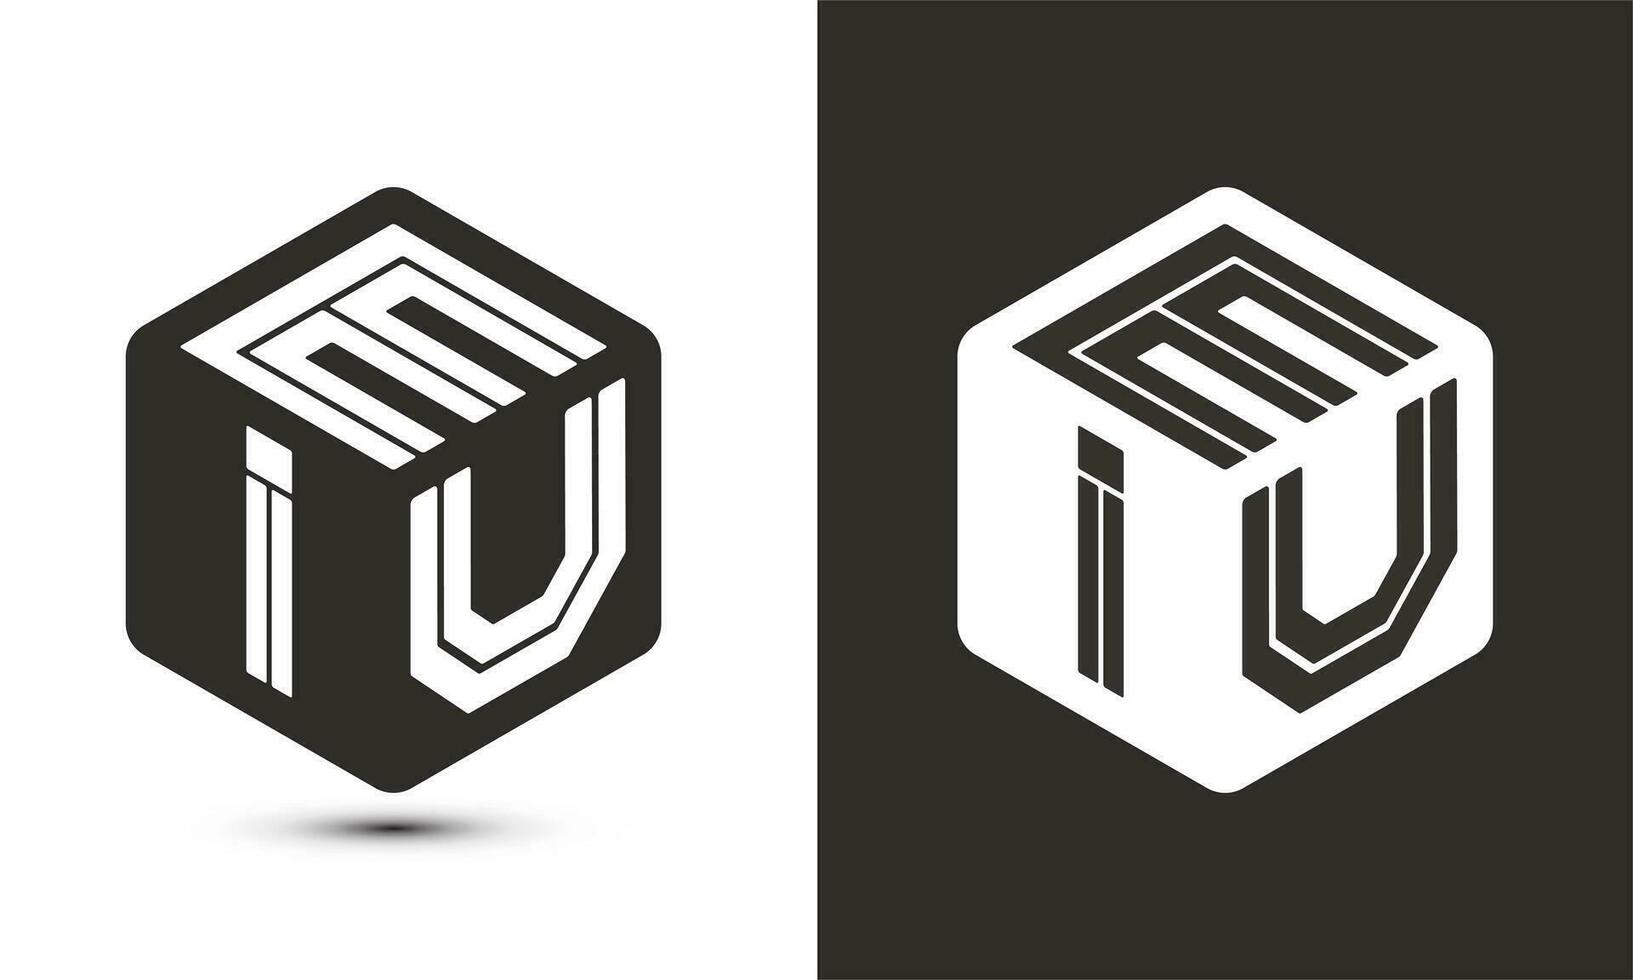 eiu brief logo ontwerp met illustrator kubus logo, vector logo modern alfabet doopvont overlappen stijl.